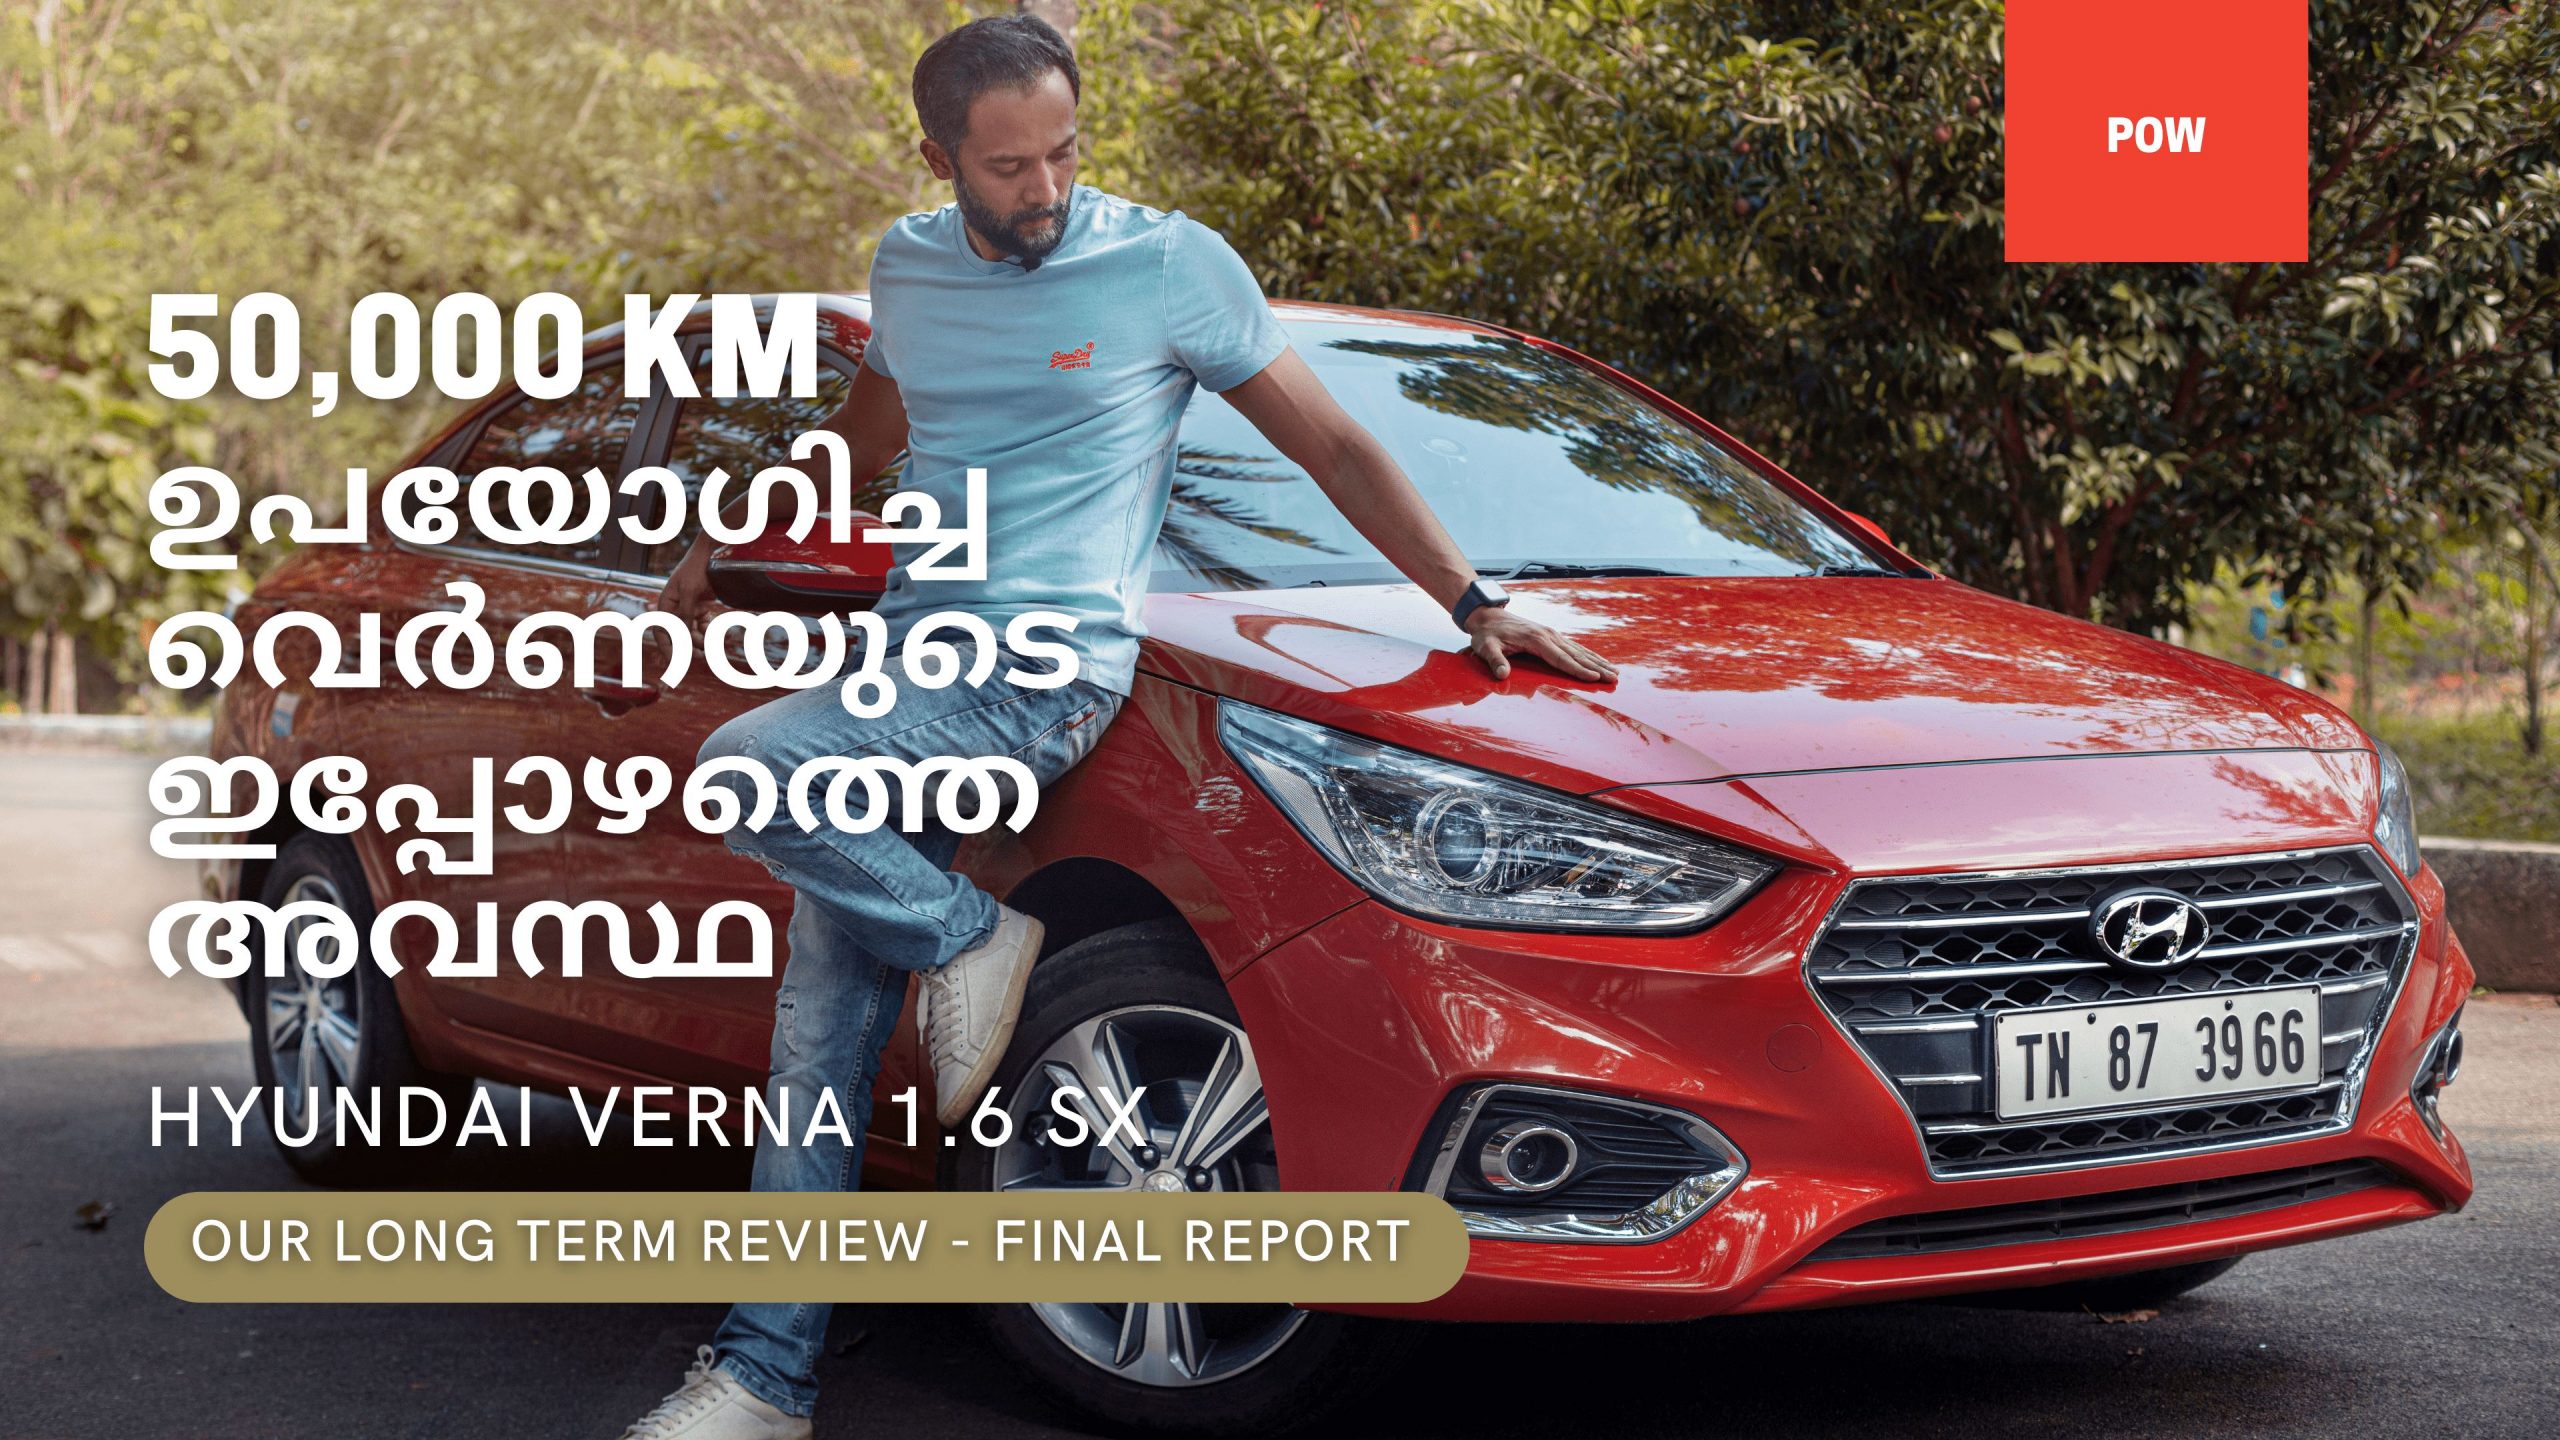 Hyundai Verna Long Term Final Report